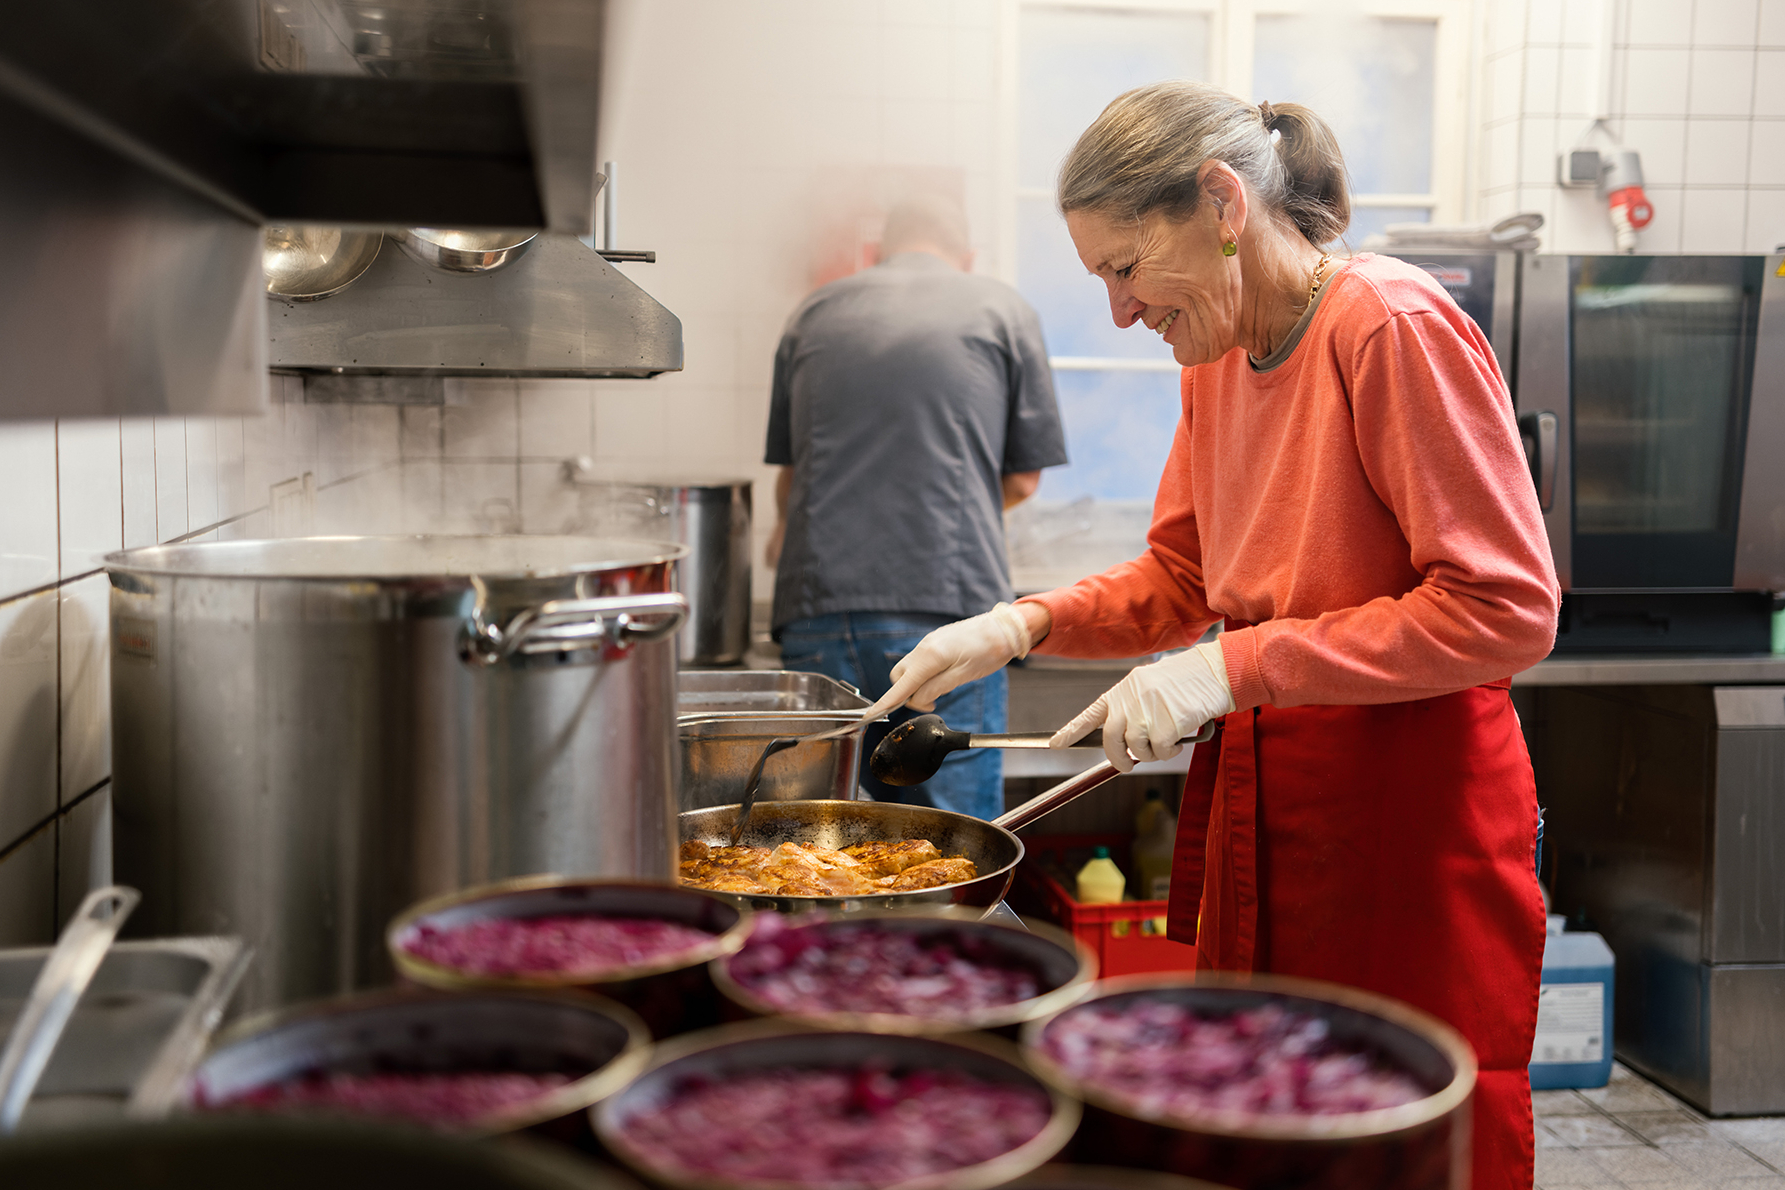 Ehrenamtliche Mitarbeiterin kocht für Samariter Suppentopf in Gastro-Küche